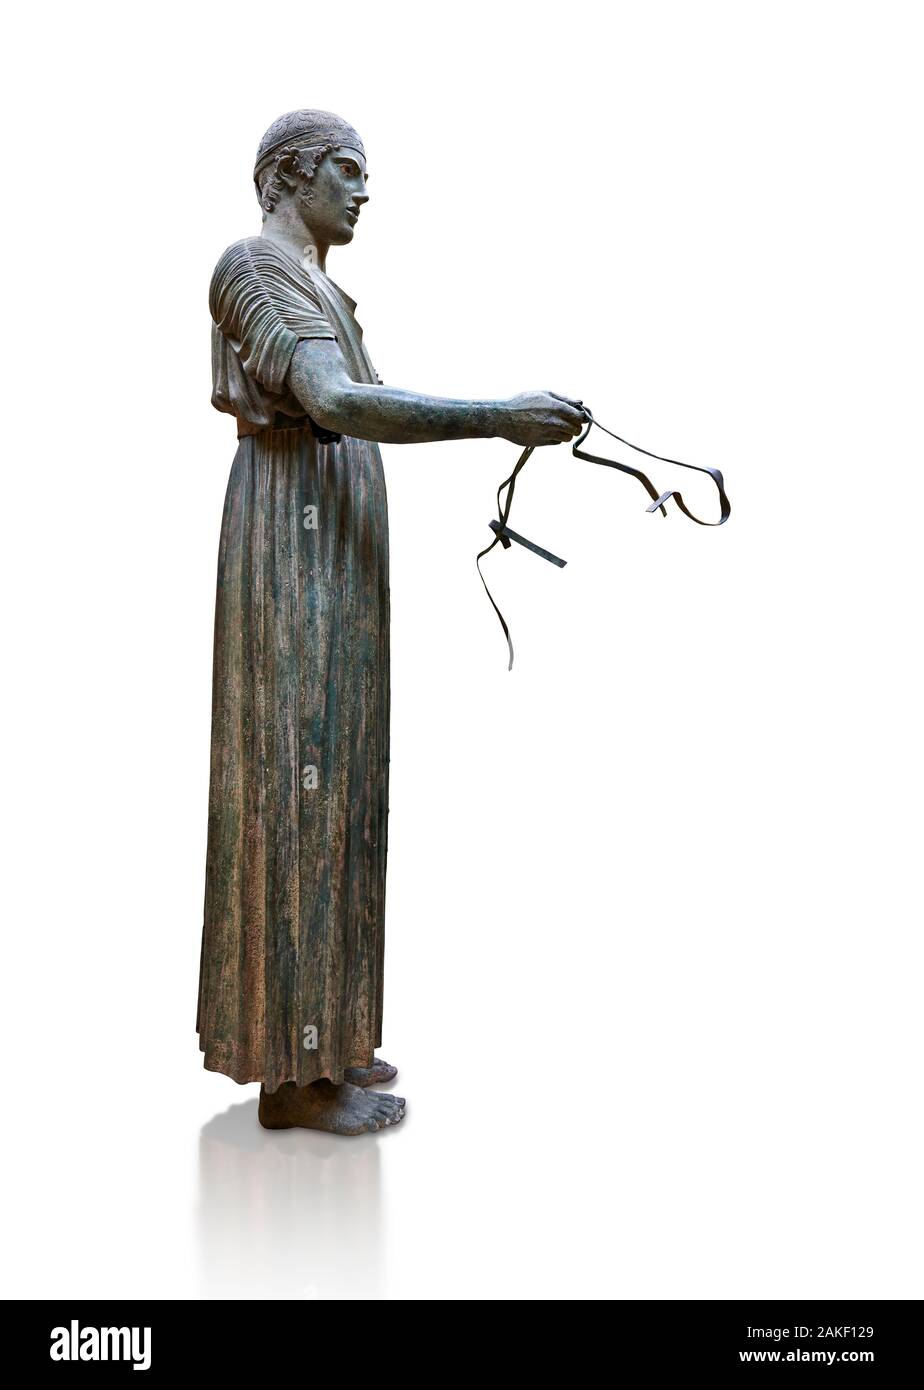 Schwere Stil der griechischen Antike Bronze Skulptur von einem wagenlenker, 480-460 v. Chr., Delphi Nationalen Archäologischen Museum. Gegen weiße. Der Wagenlenker ist ein r Stockfoto